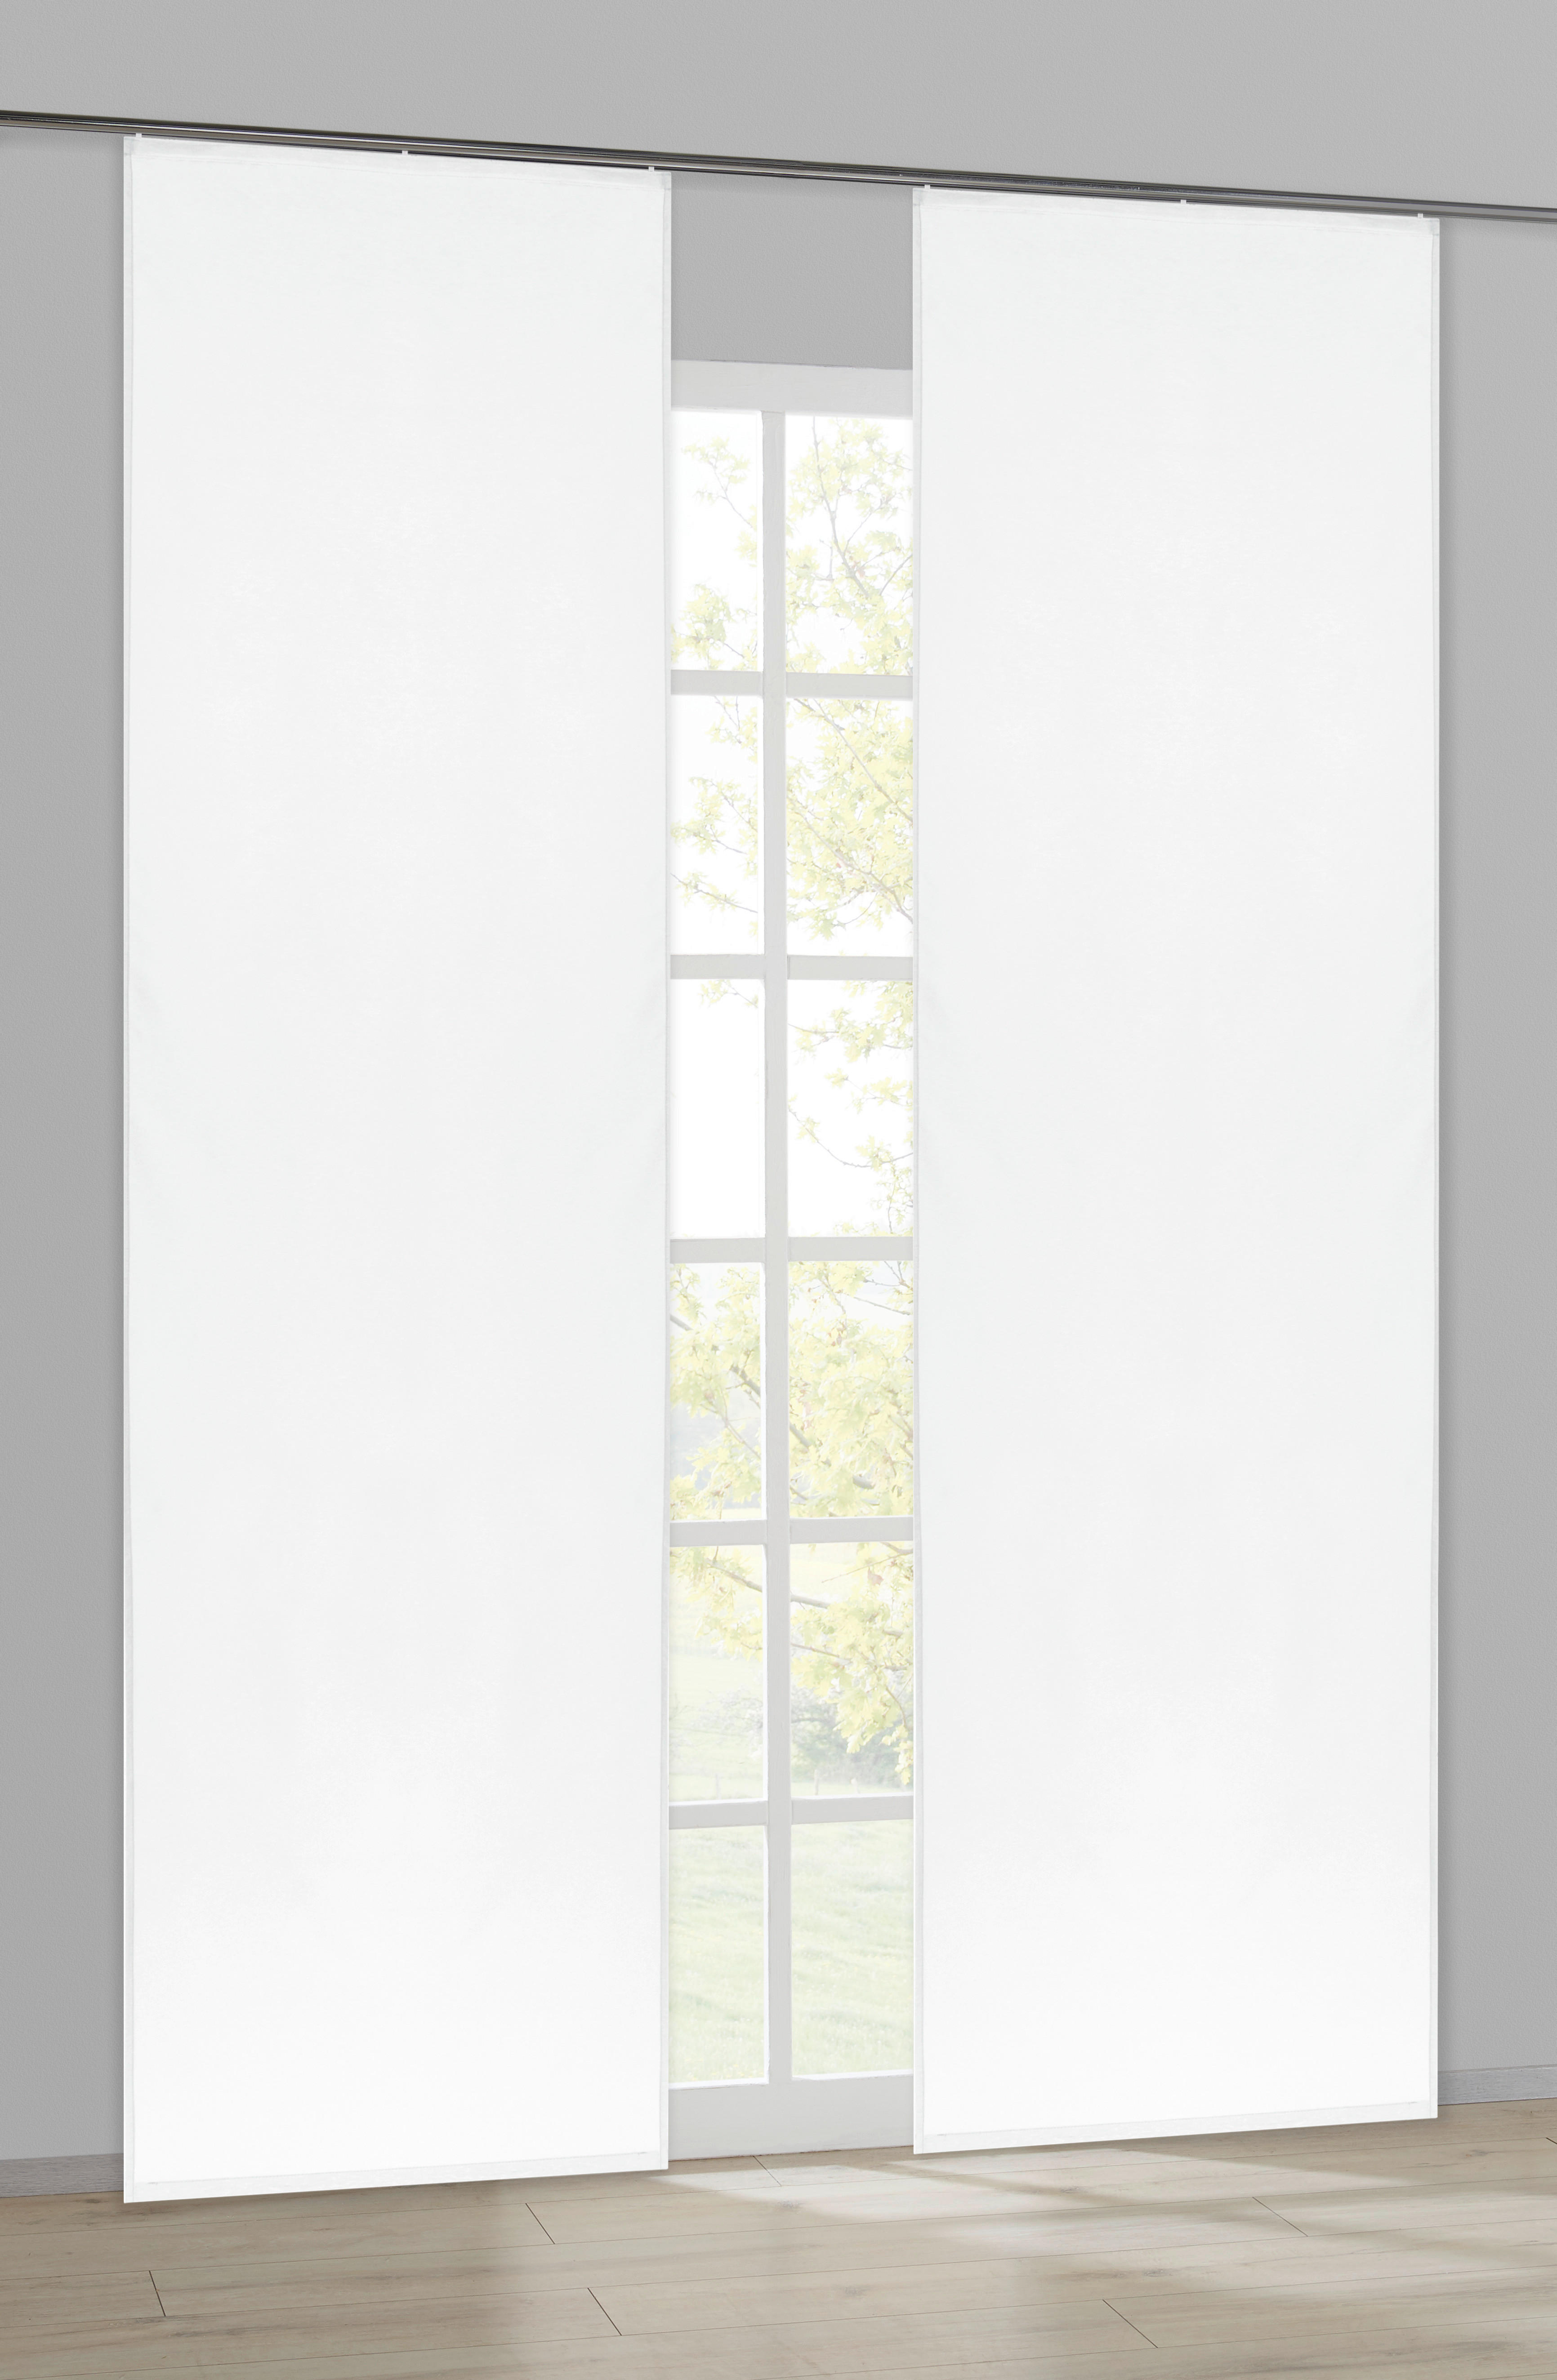 Schiebevorhang Pearl weiß B/L: ca. 60x245 cm Pearl - weiß (60,00/245,00cm) - ACUS design collection